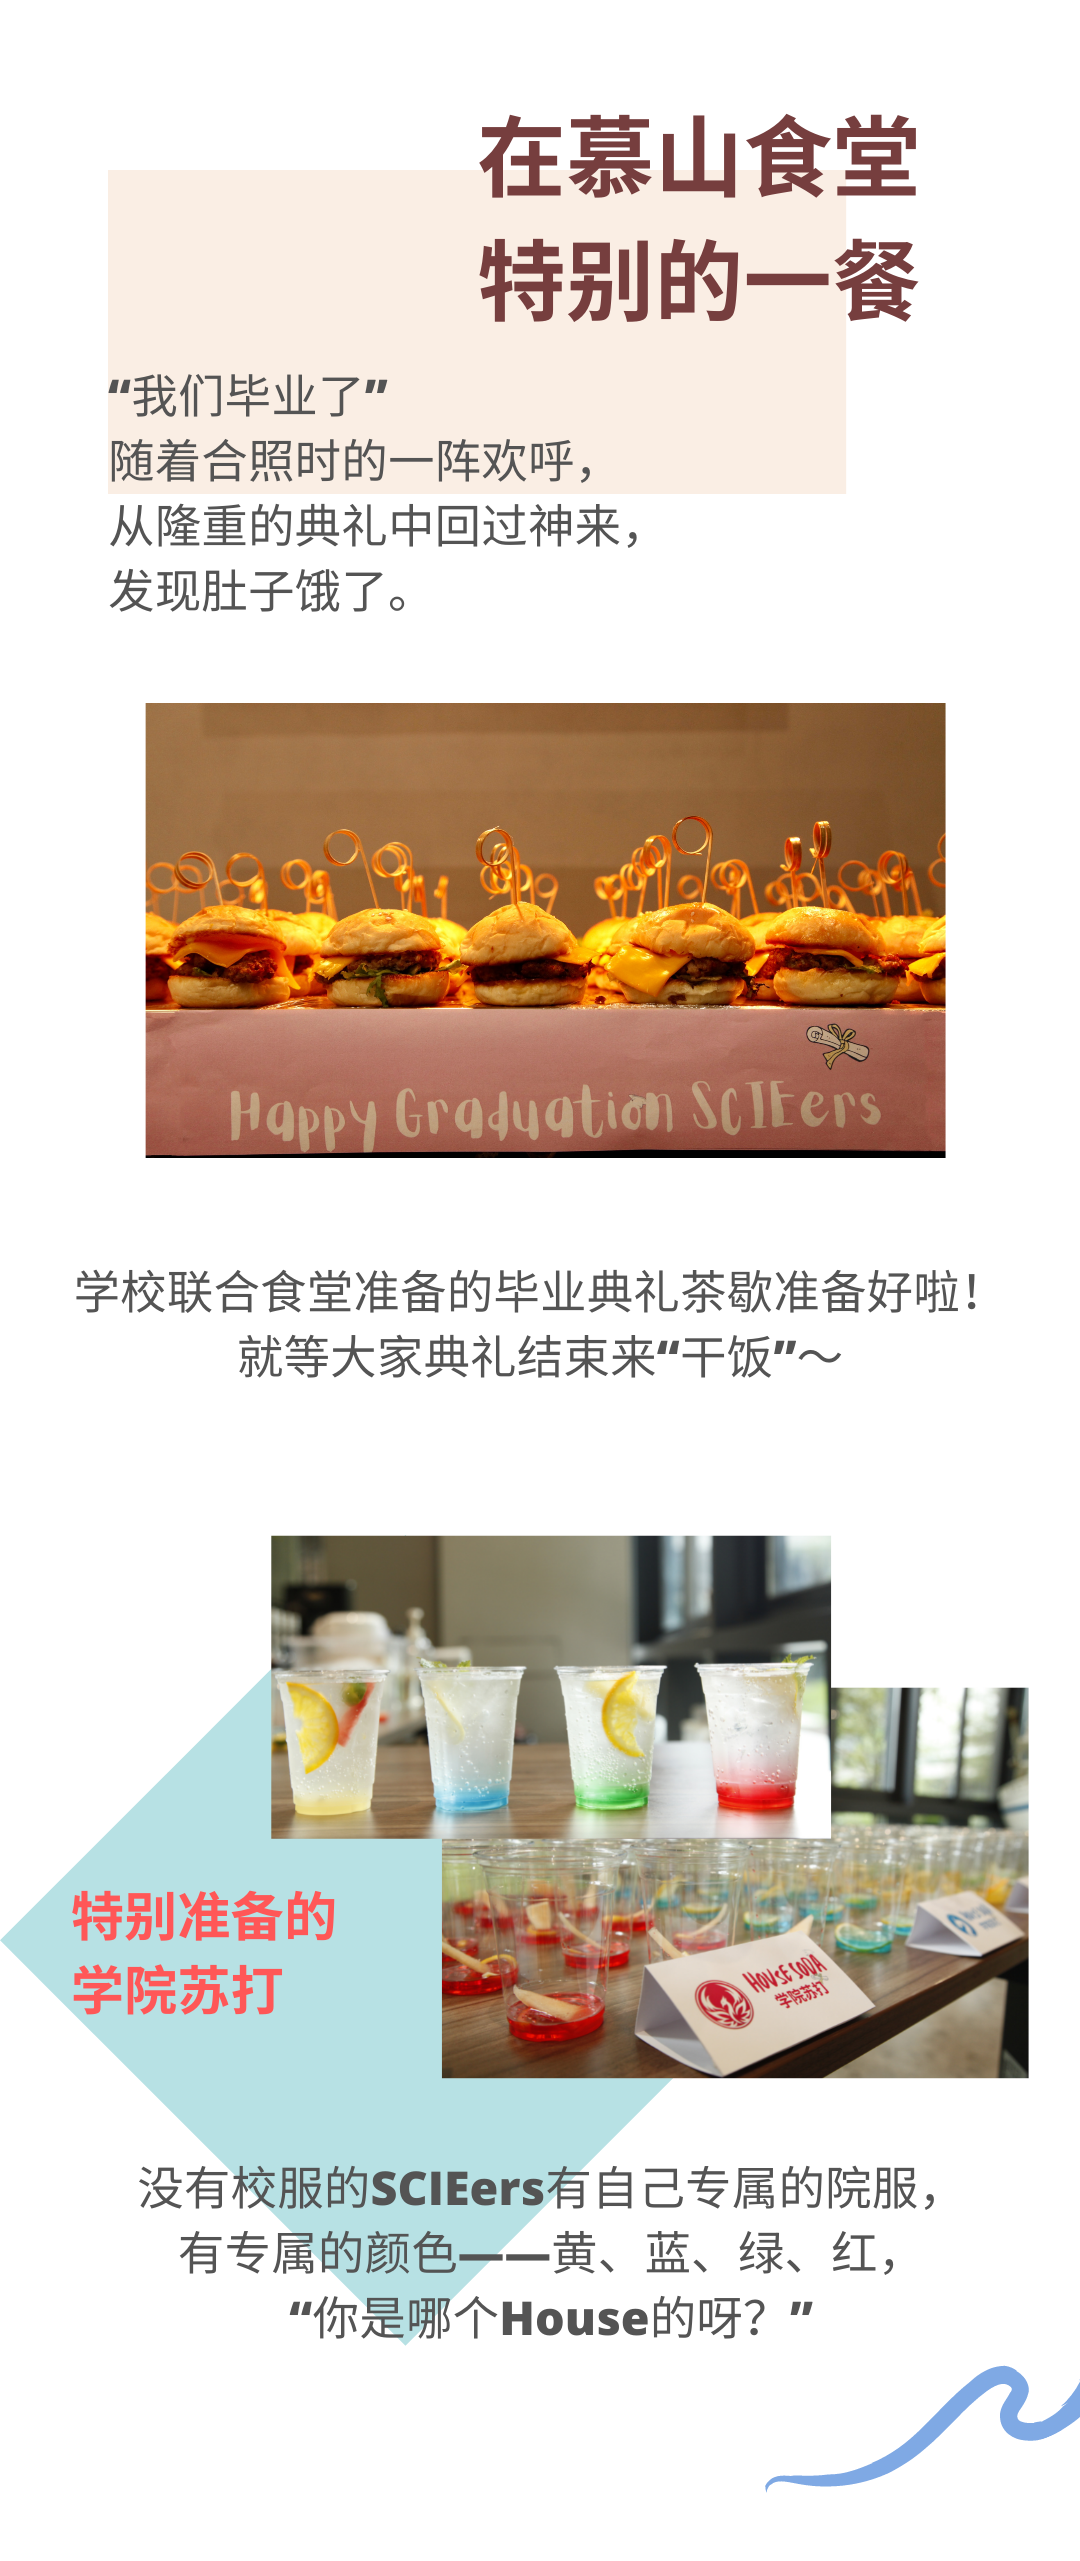 深国交食堂 - “深圳沐知餐饮” 在毕业典礼这一天的真情流露  第3张